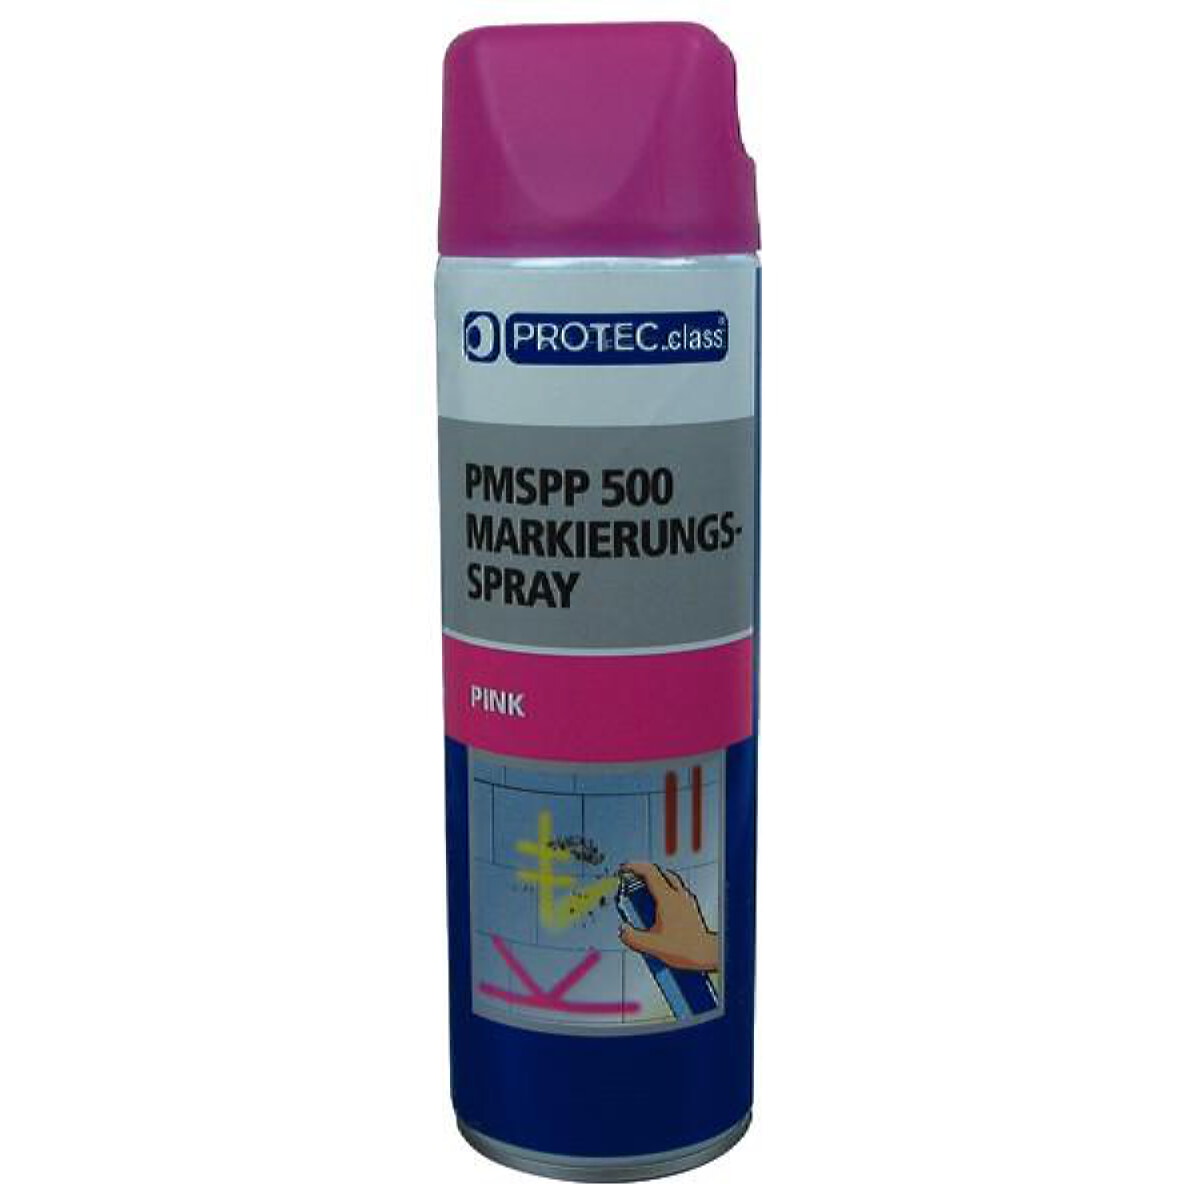 PROTEC.class Markierungsspray PMSPP 500 pink 500ml